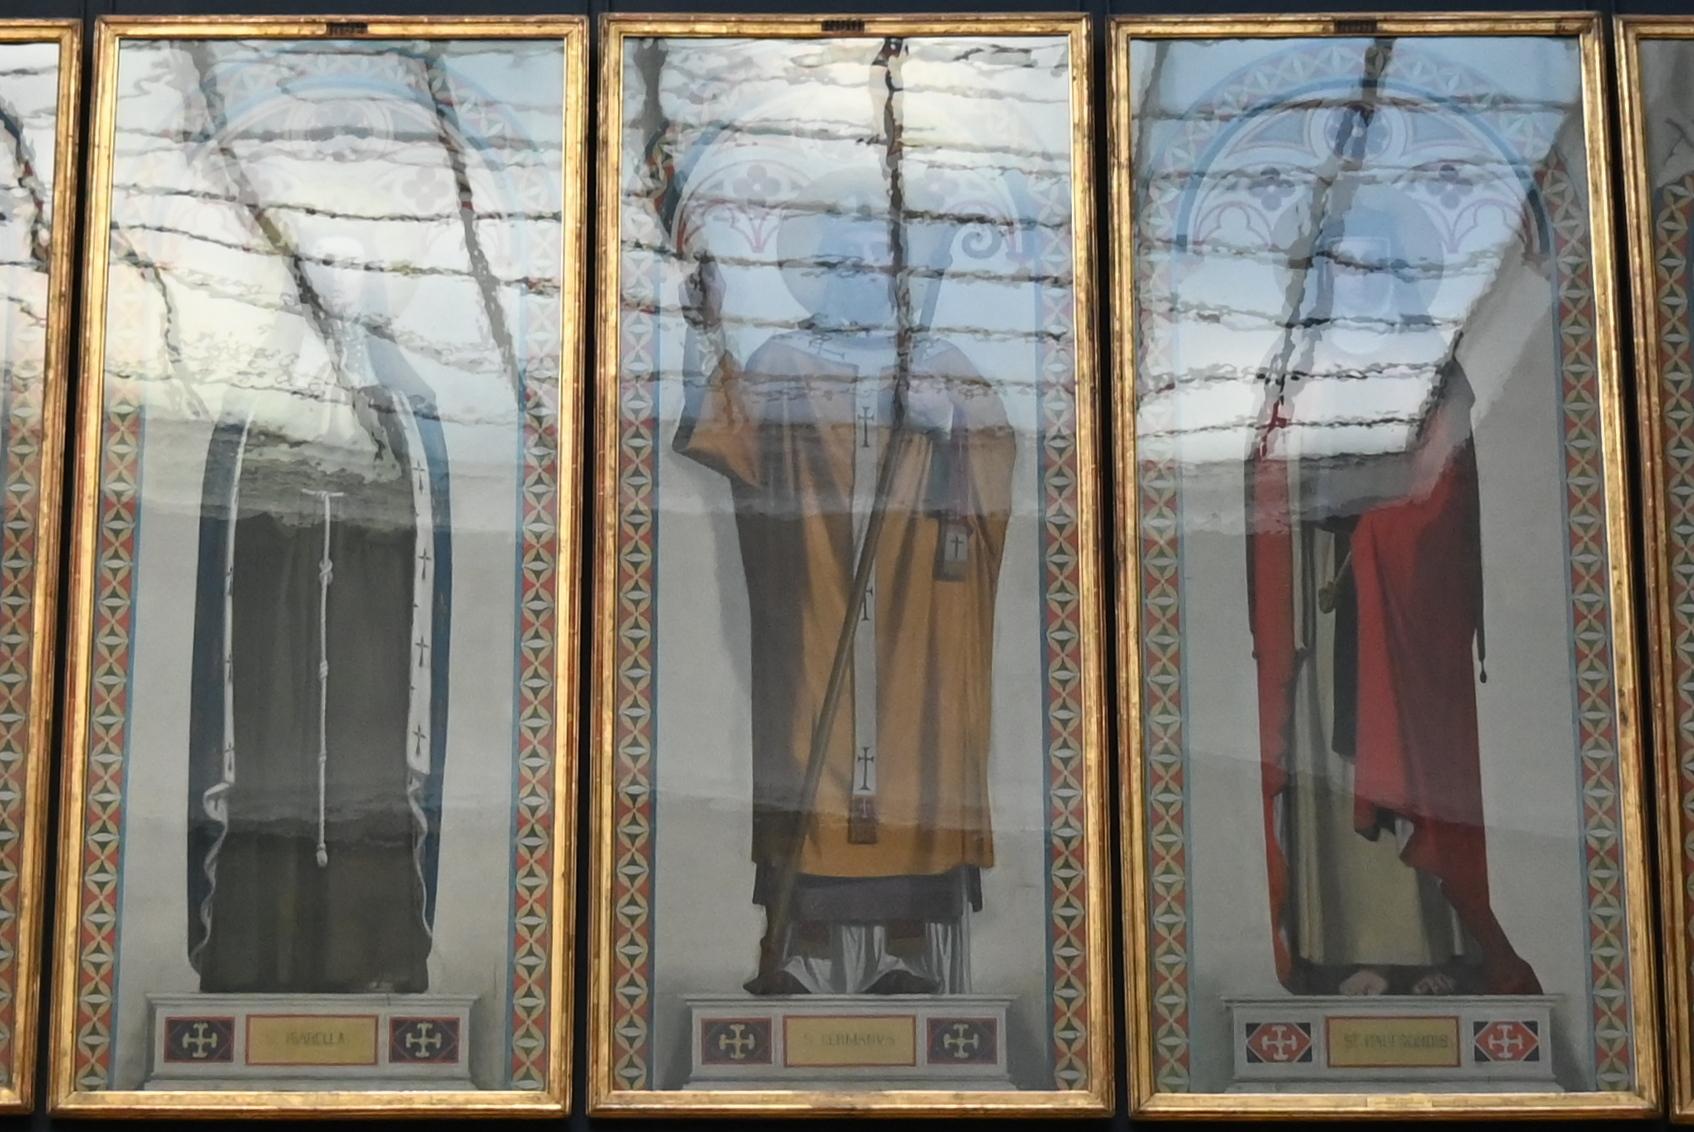 Jean-Auguste-Dominique Ingres (1805–1856), Saint Germain, Bischof von Paris, Dreux, Chapelle Royale Saint-Louis, jetzt Paris, Musée du Louvre, Saal 940, 1844, Bild 1/2